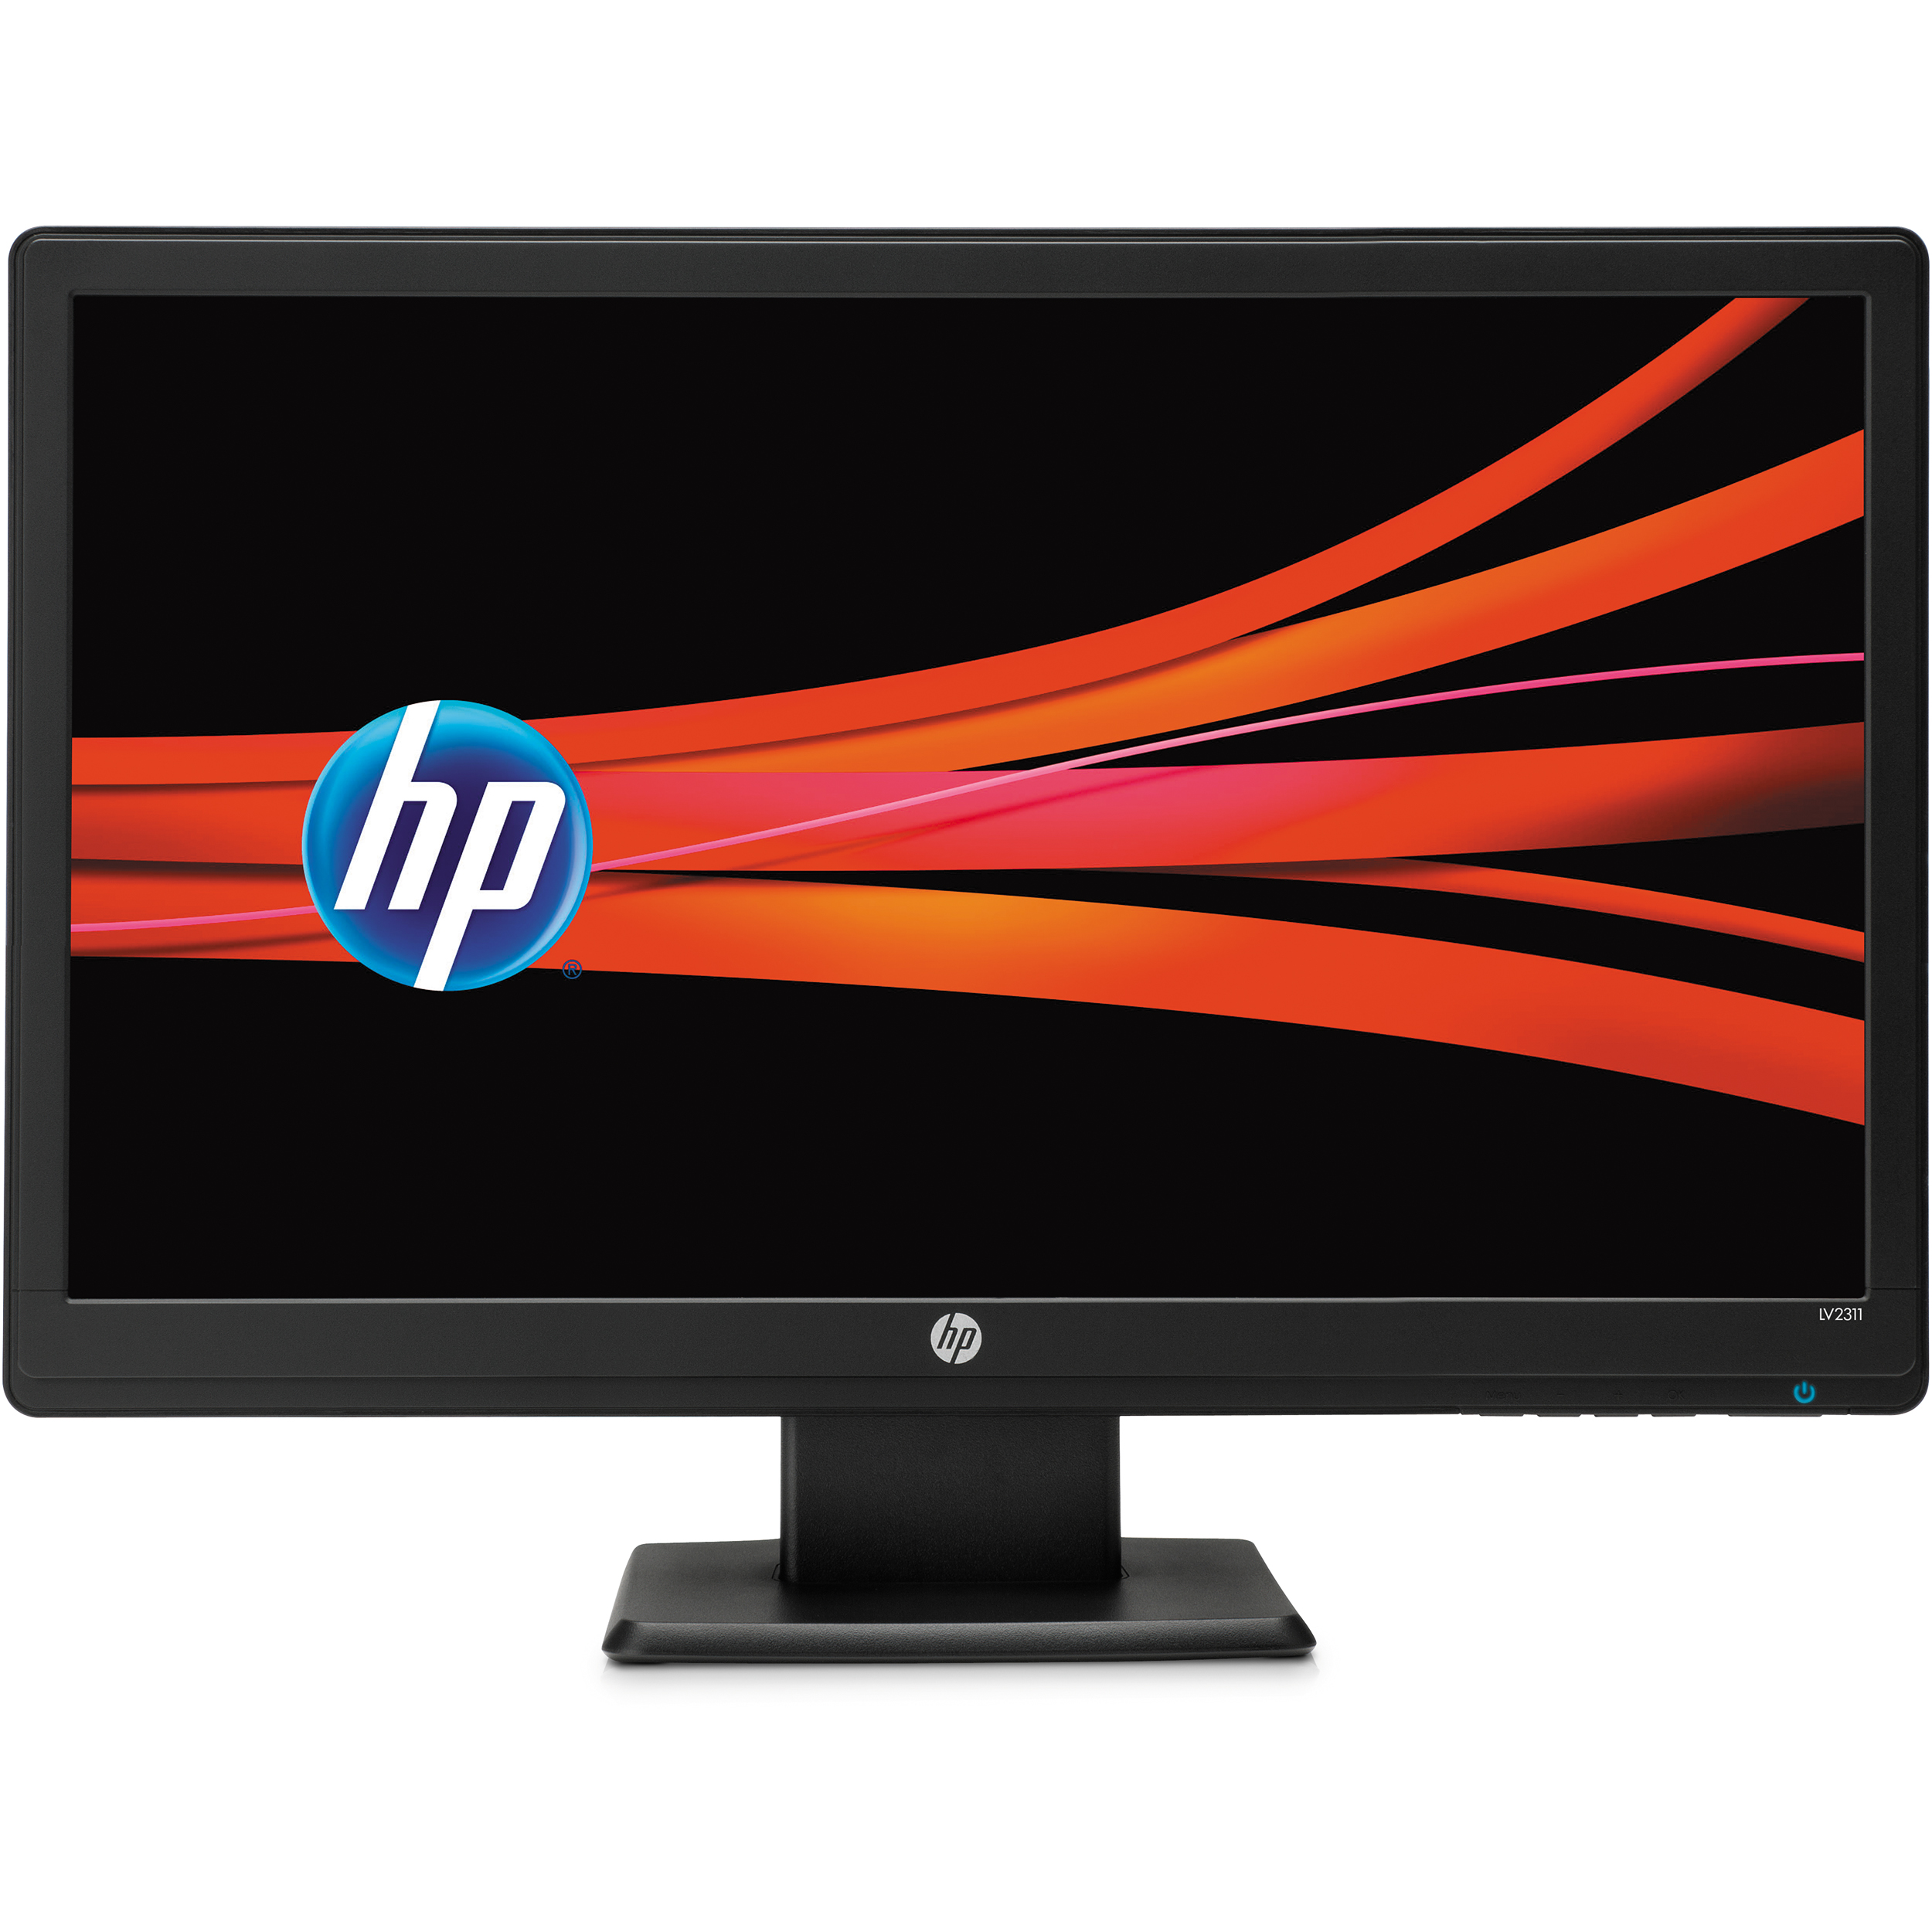 HP Monitor LV2011 